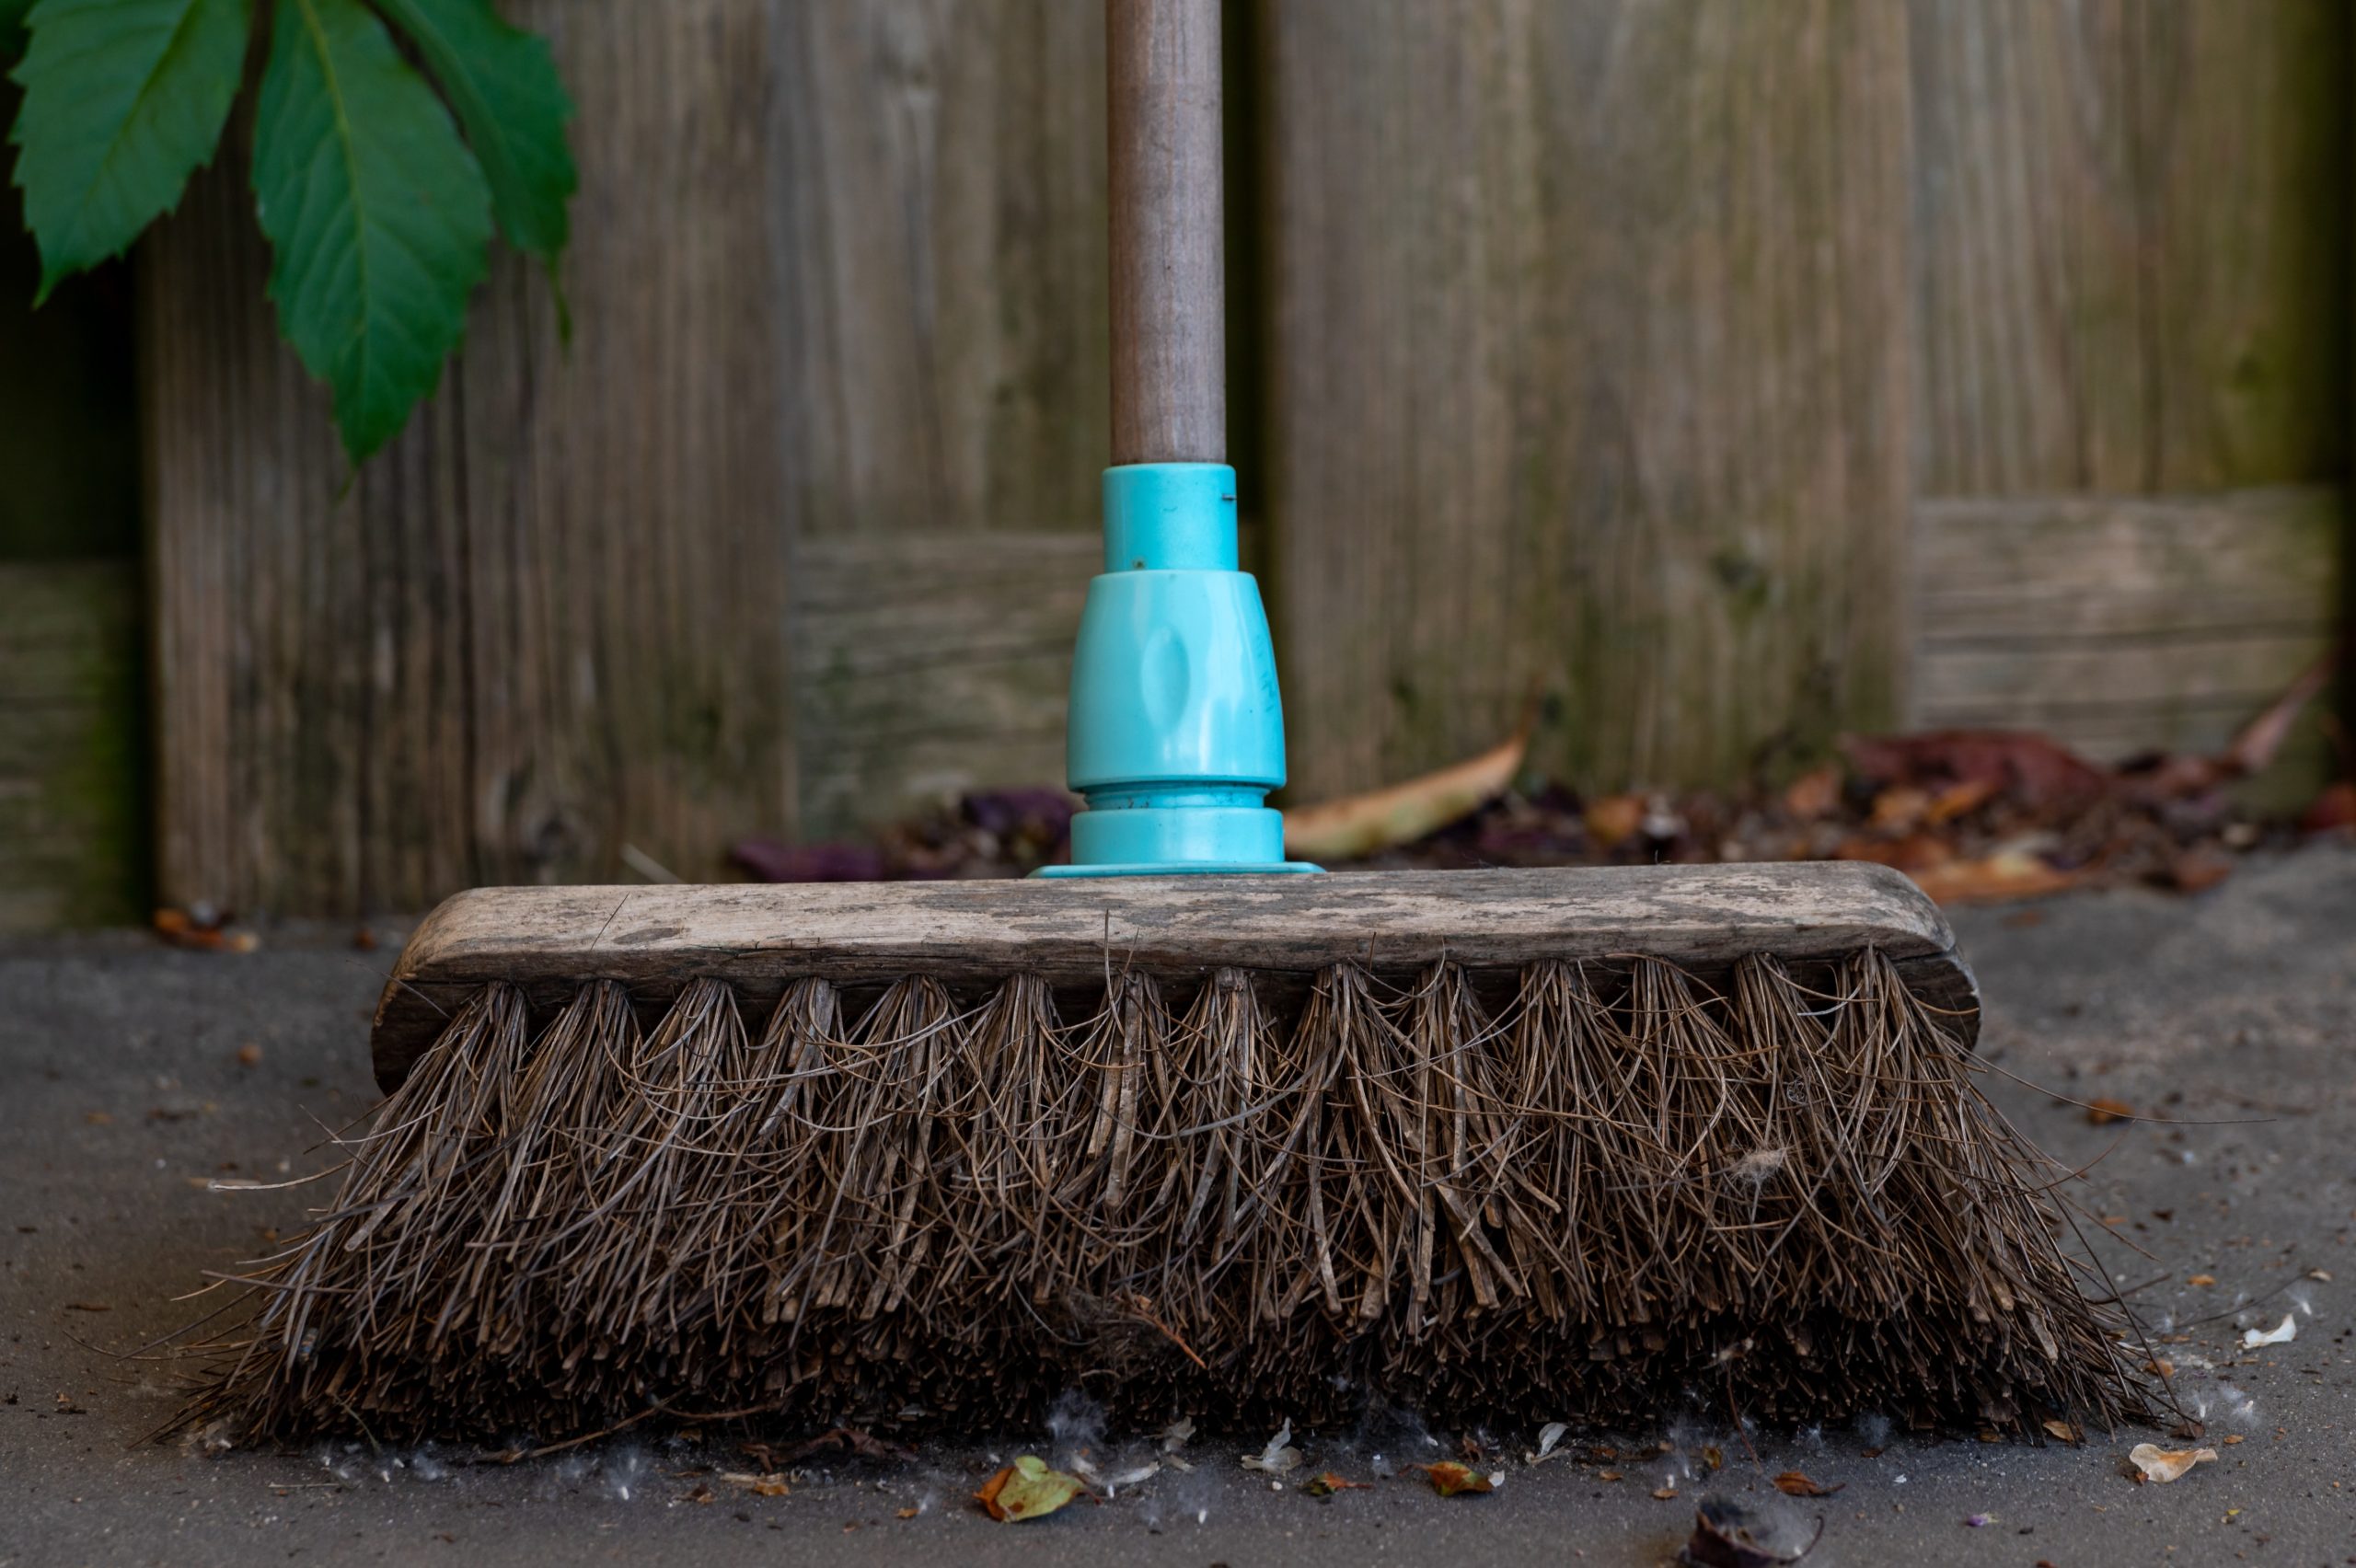 broom sweeping a dirty floor